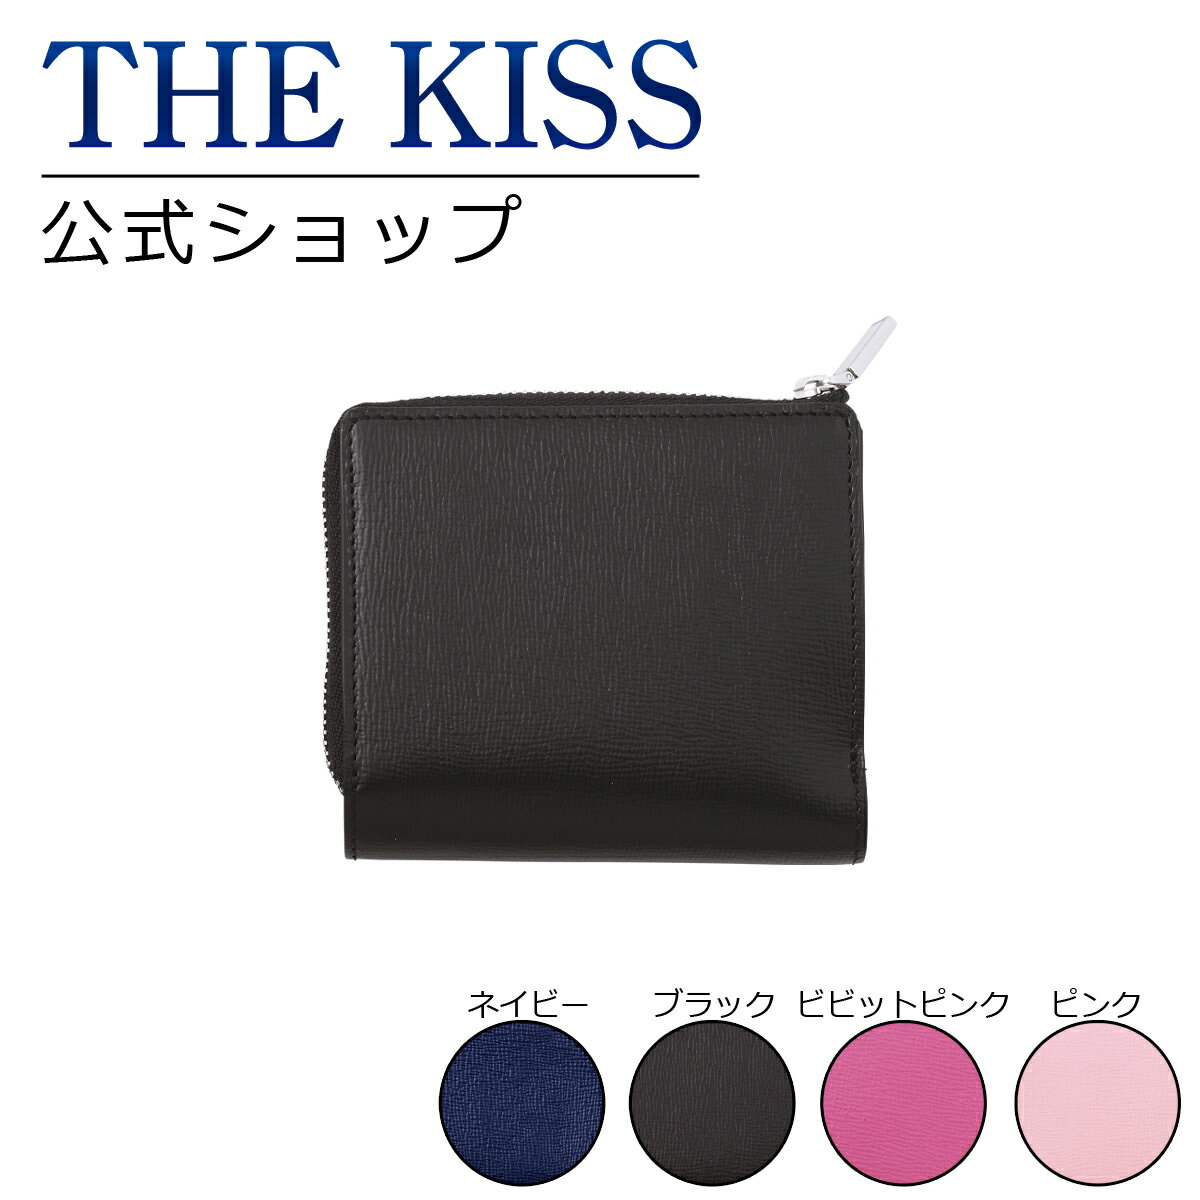 THE KISS 公式ショップ 二つ折りウォレット WL101 ザキス 【送料無料】 ブライダル